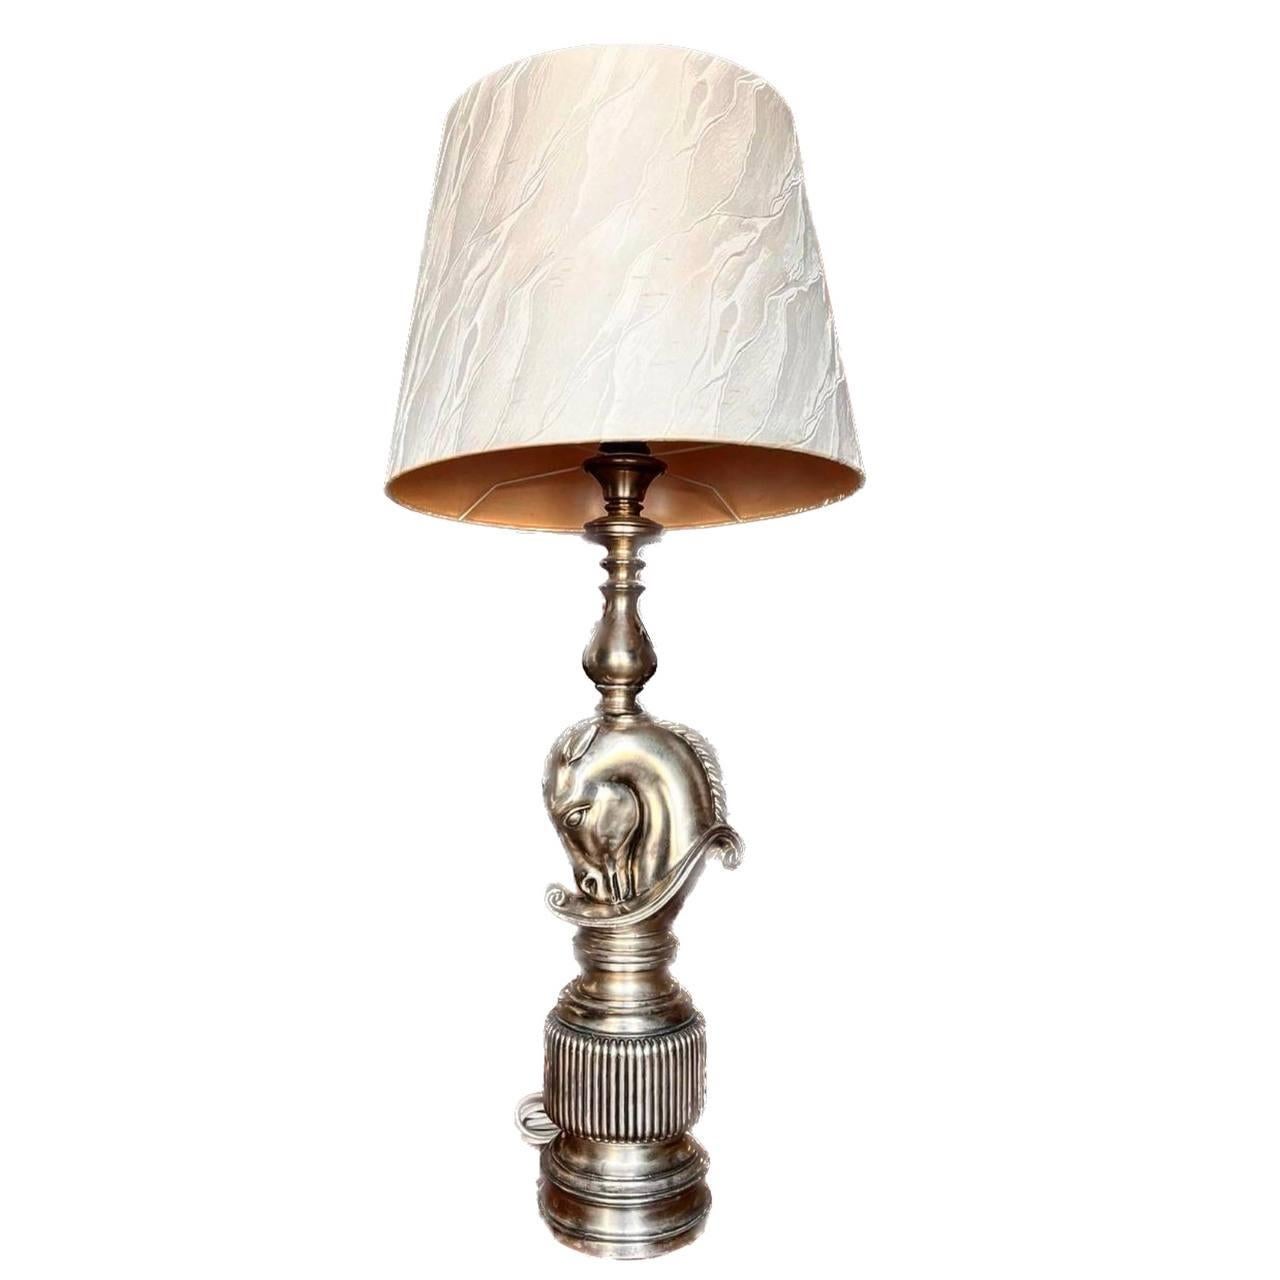 Große Messing-Tischlampe mit Schirm aus Frankreich, 1970er Jahre.

Diese elegante Ritter-Schachfiguren-Lampe

Die Elegant Knight Schachbrett-Tischlampe ist ein Kunstwerk von höchster Qualität. 

Dekorative Lampe zusätzlich zur Beleuchtung,